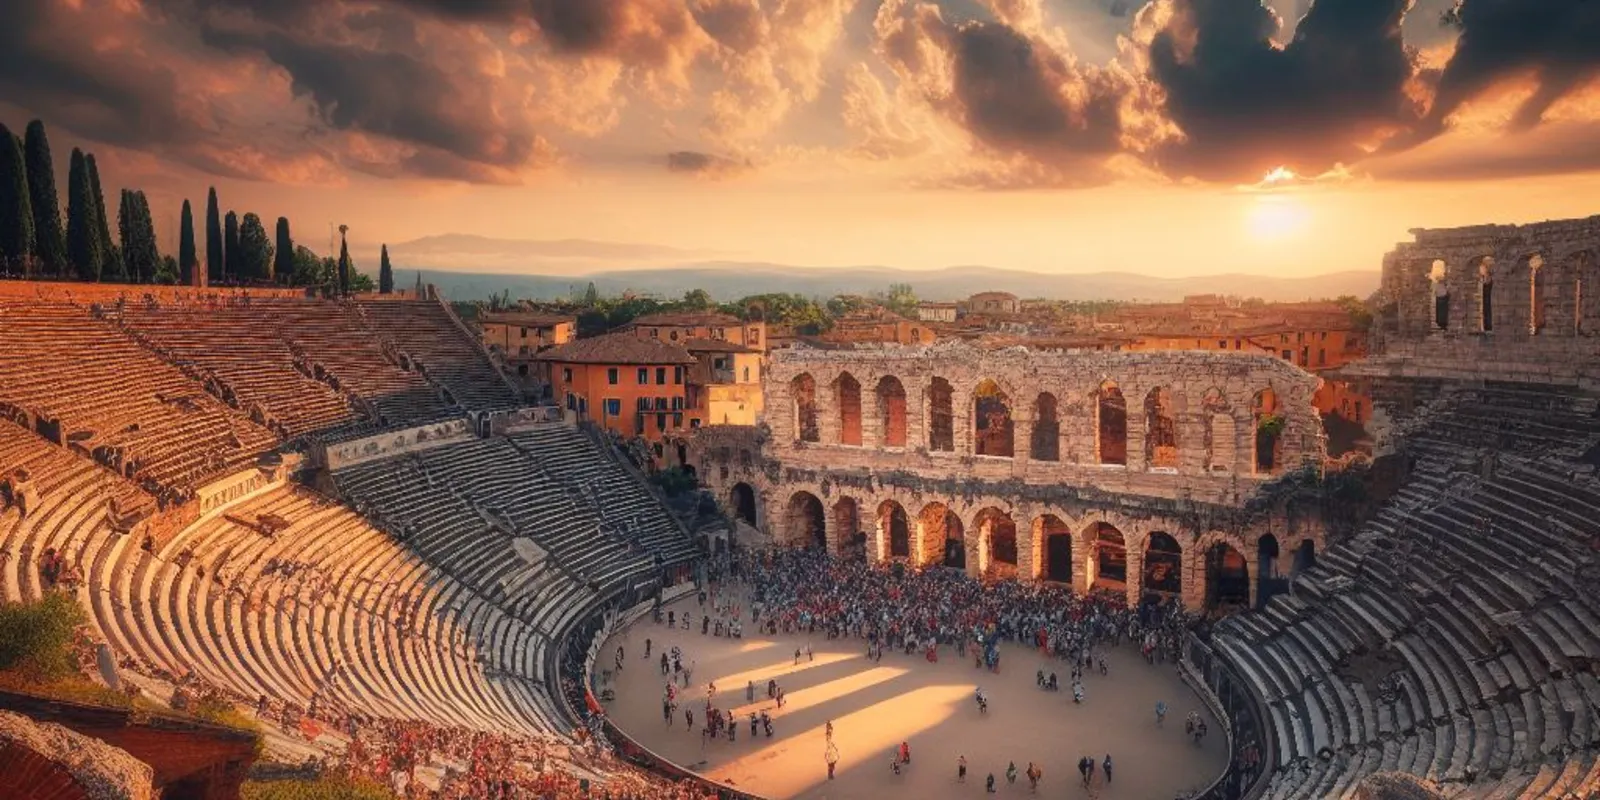 L'Anfiteatro di Verona: Una gemma dell'antica Roma